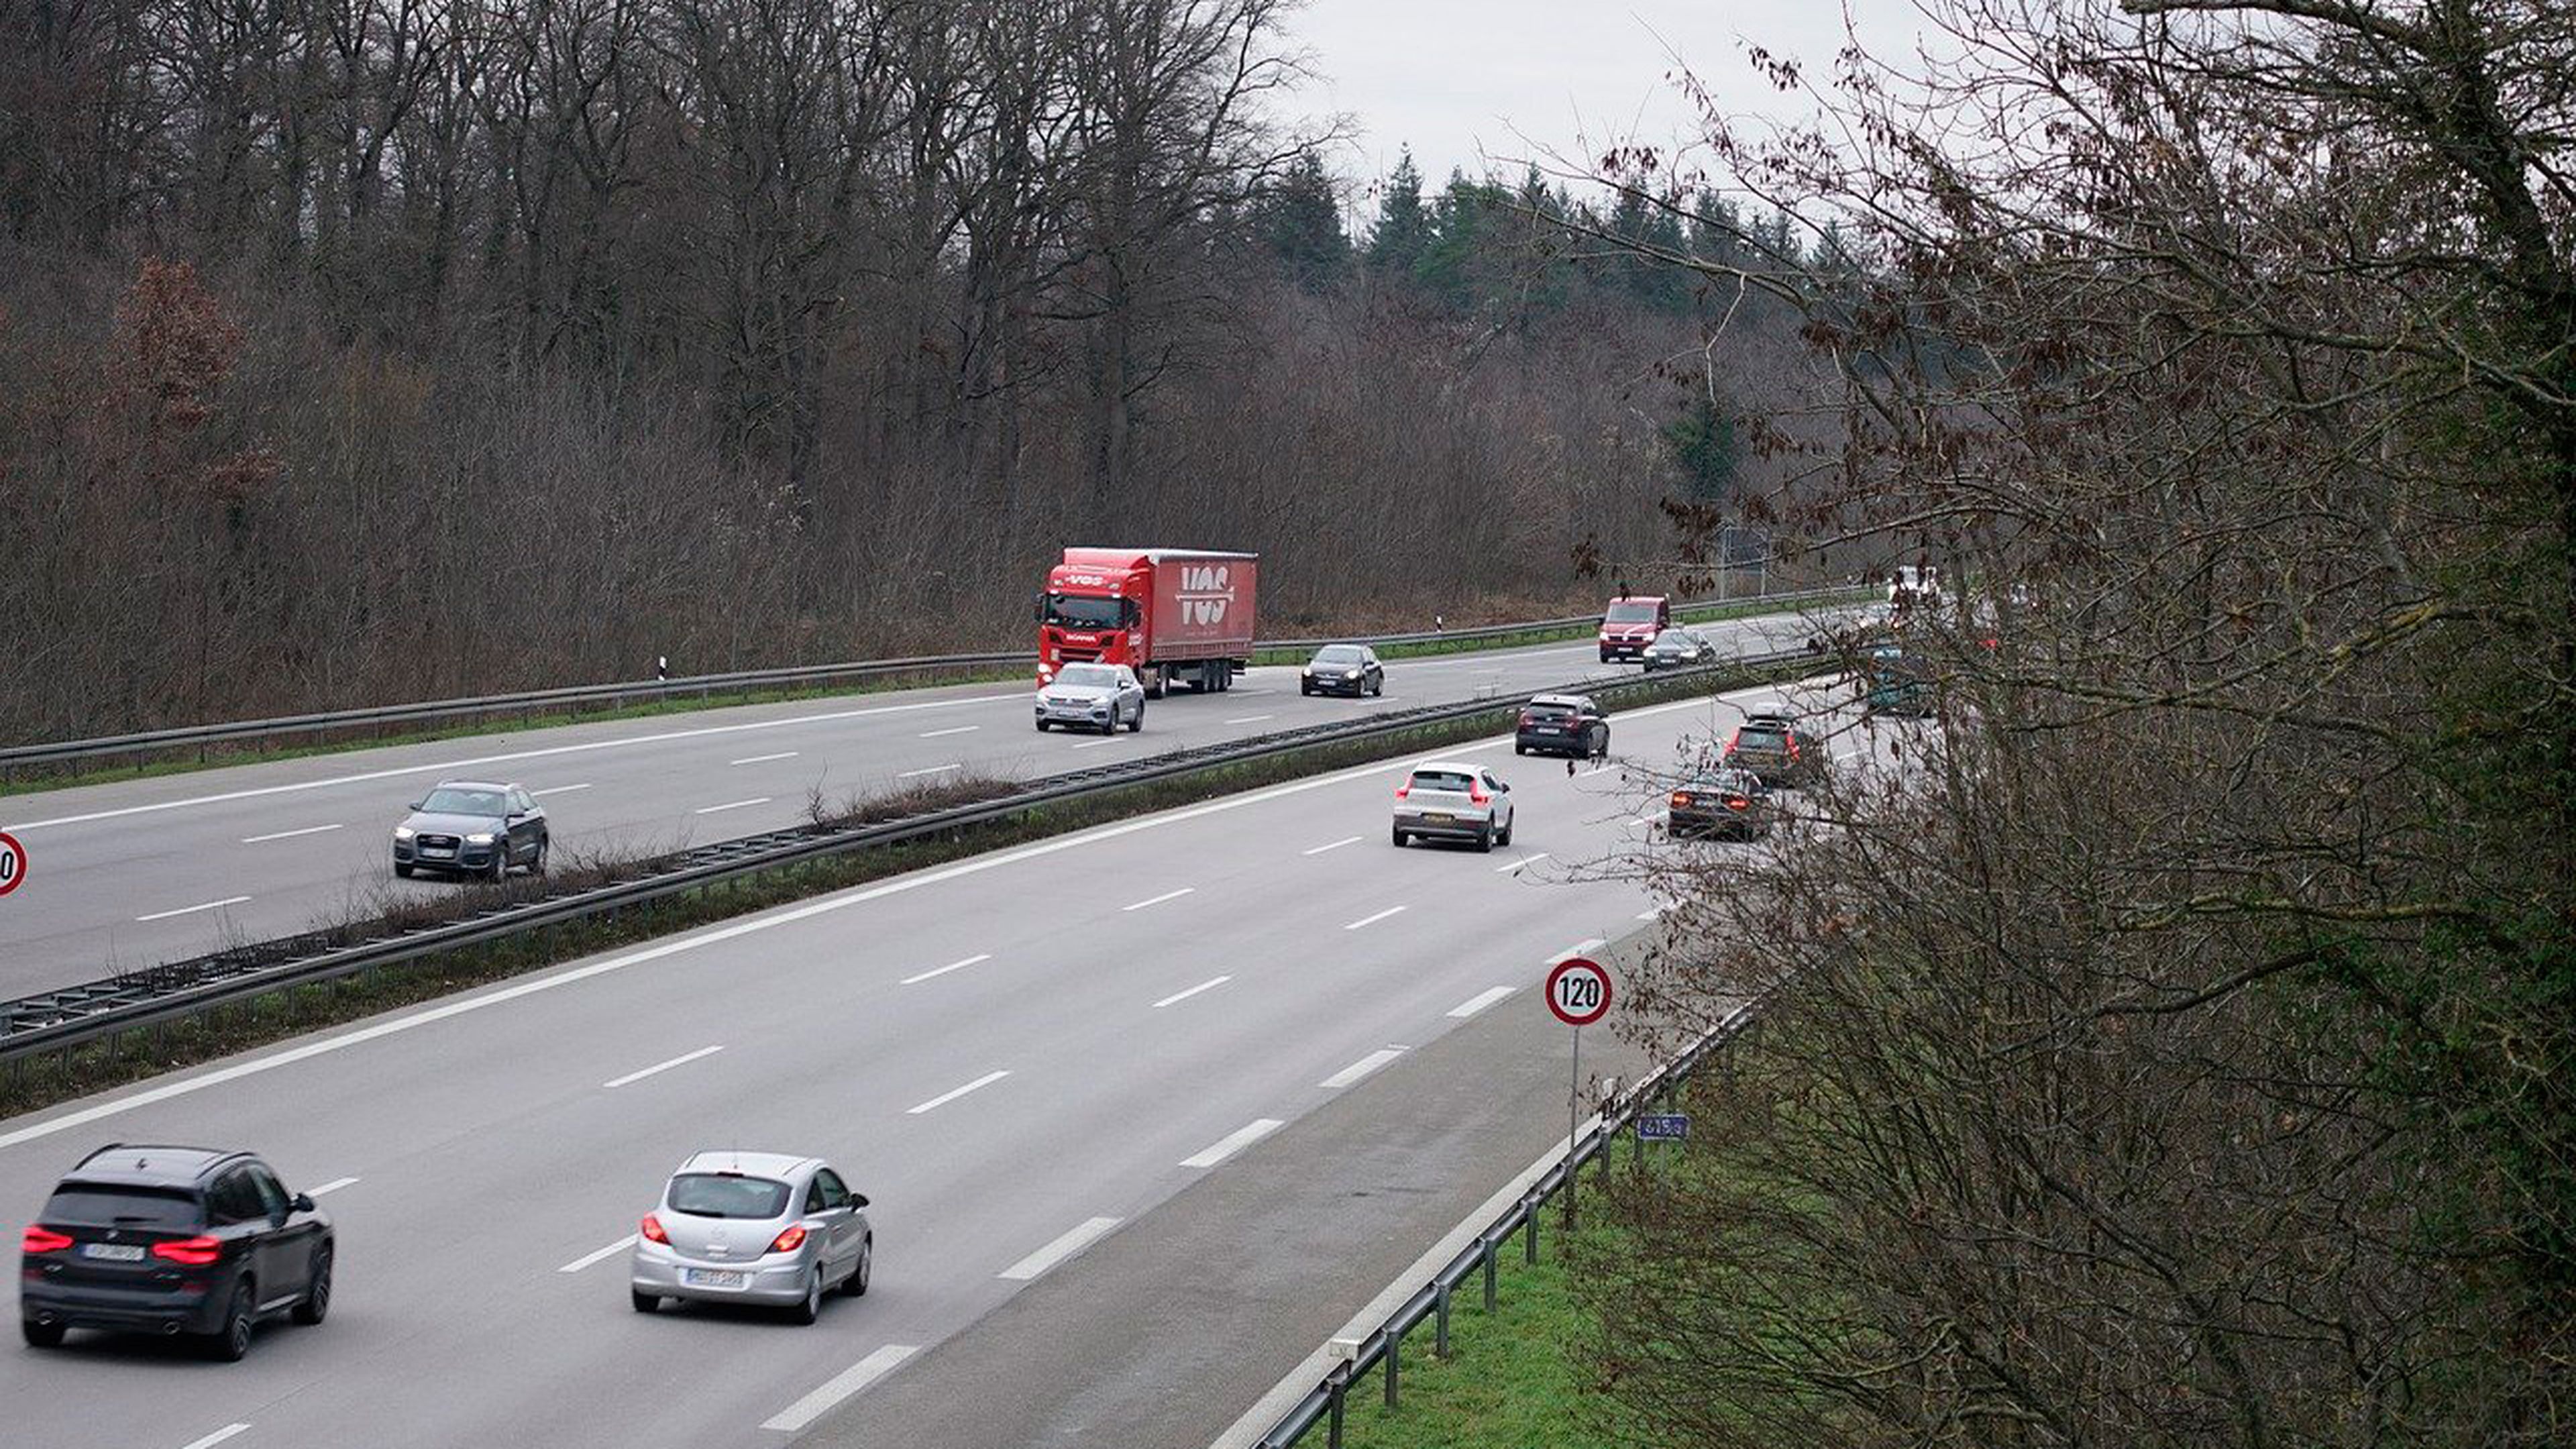 Autopista alemana (autobahn) con límite de velocidad